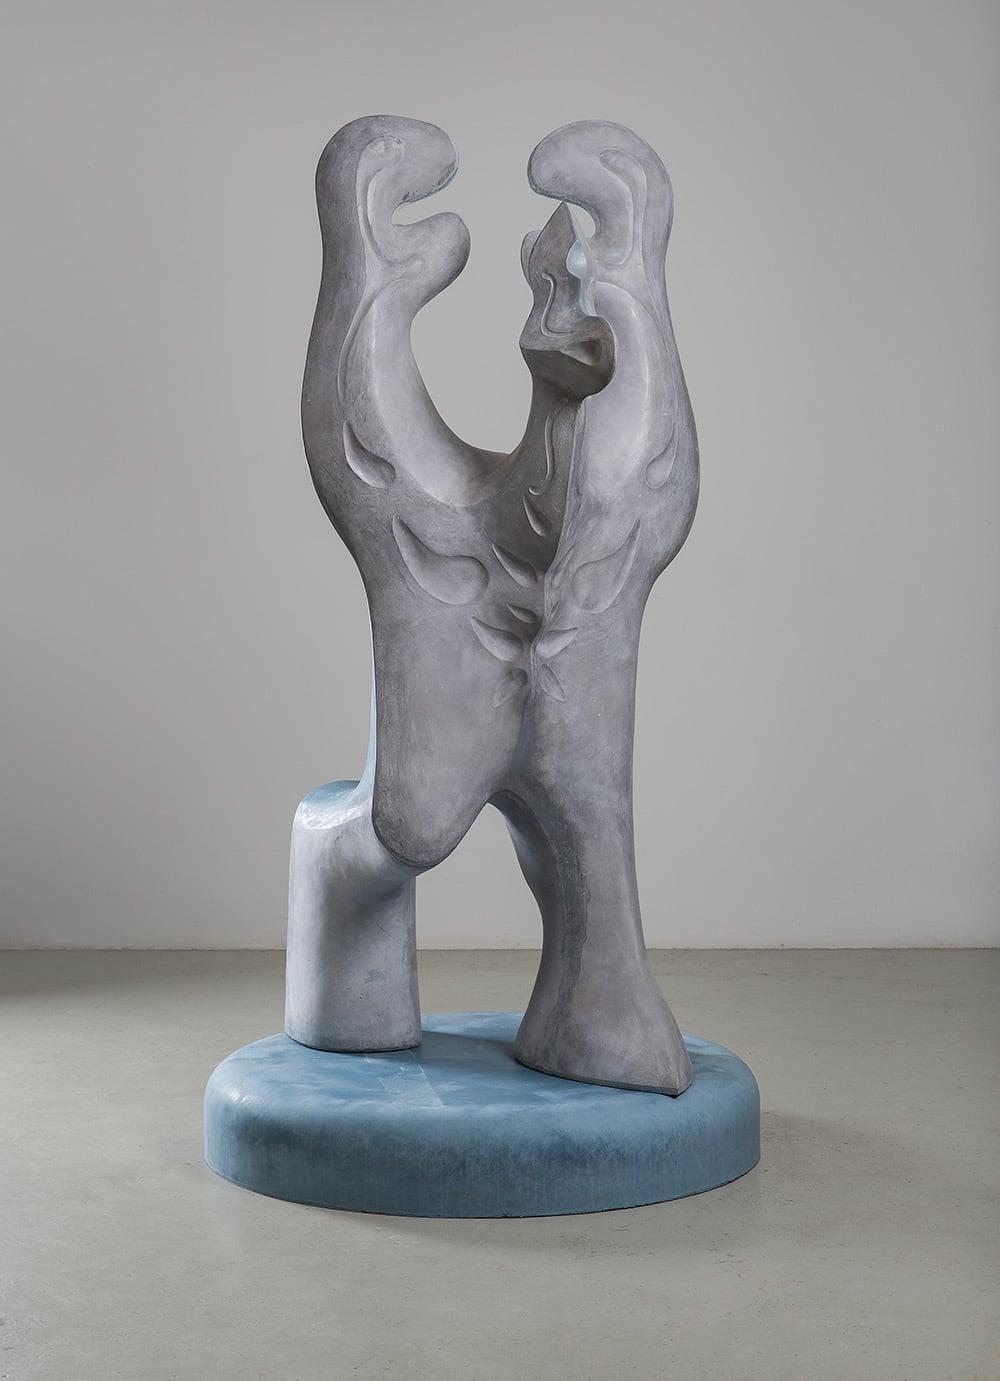 Big Creature by Pavlína Kvita - Zeitgenössische Skulptur, futuristische Figur, grau